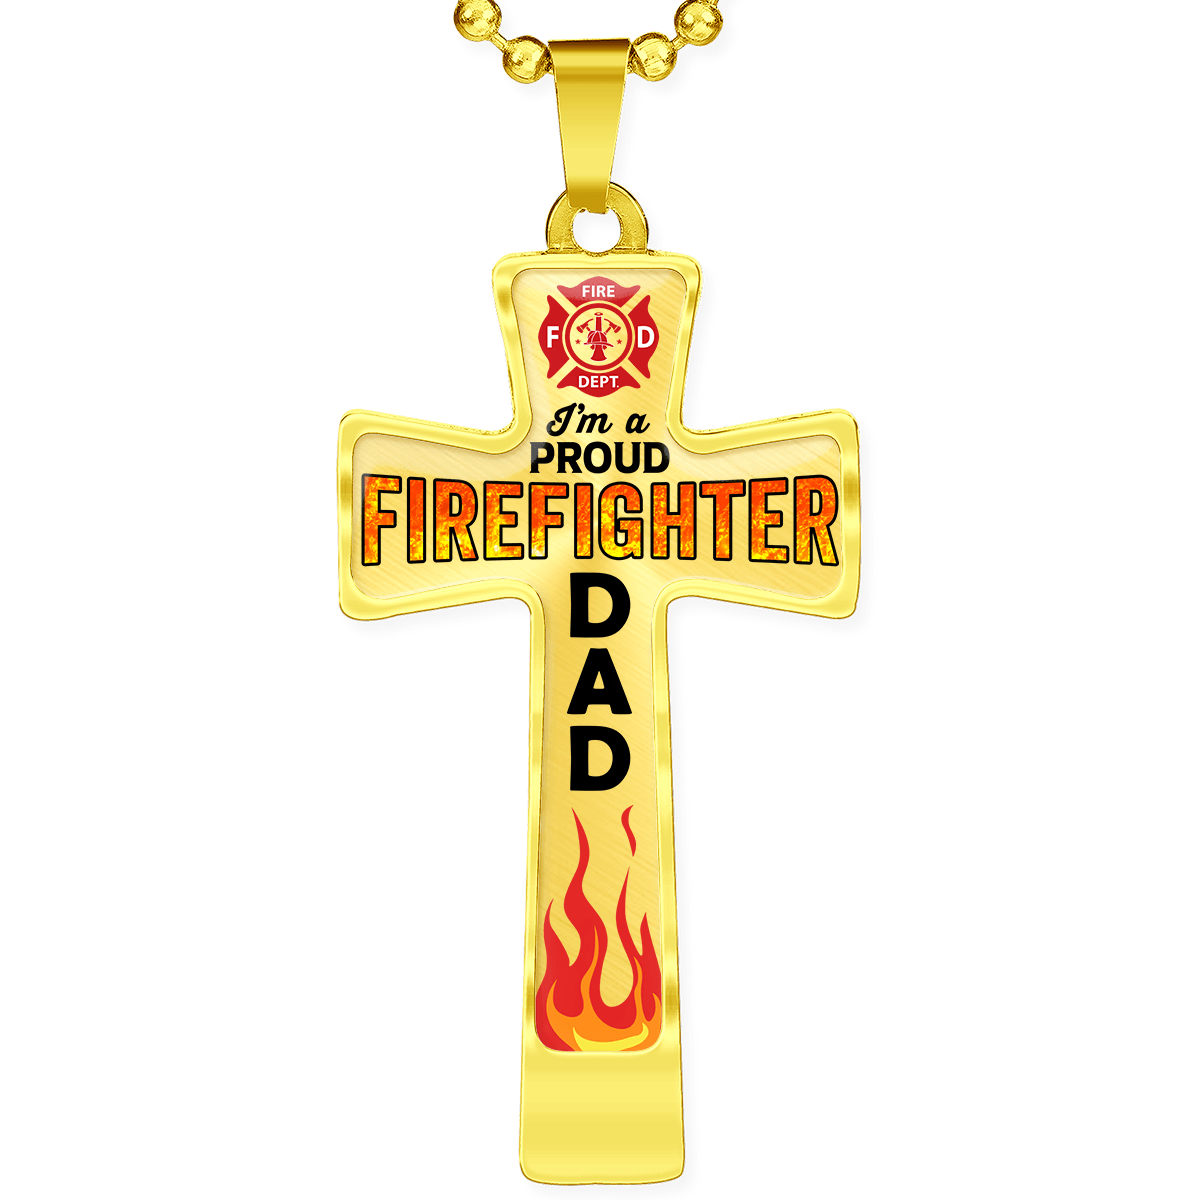 Proud Firefighter Dad Cross Necklace - Heroic Defender